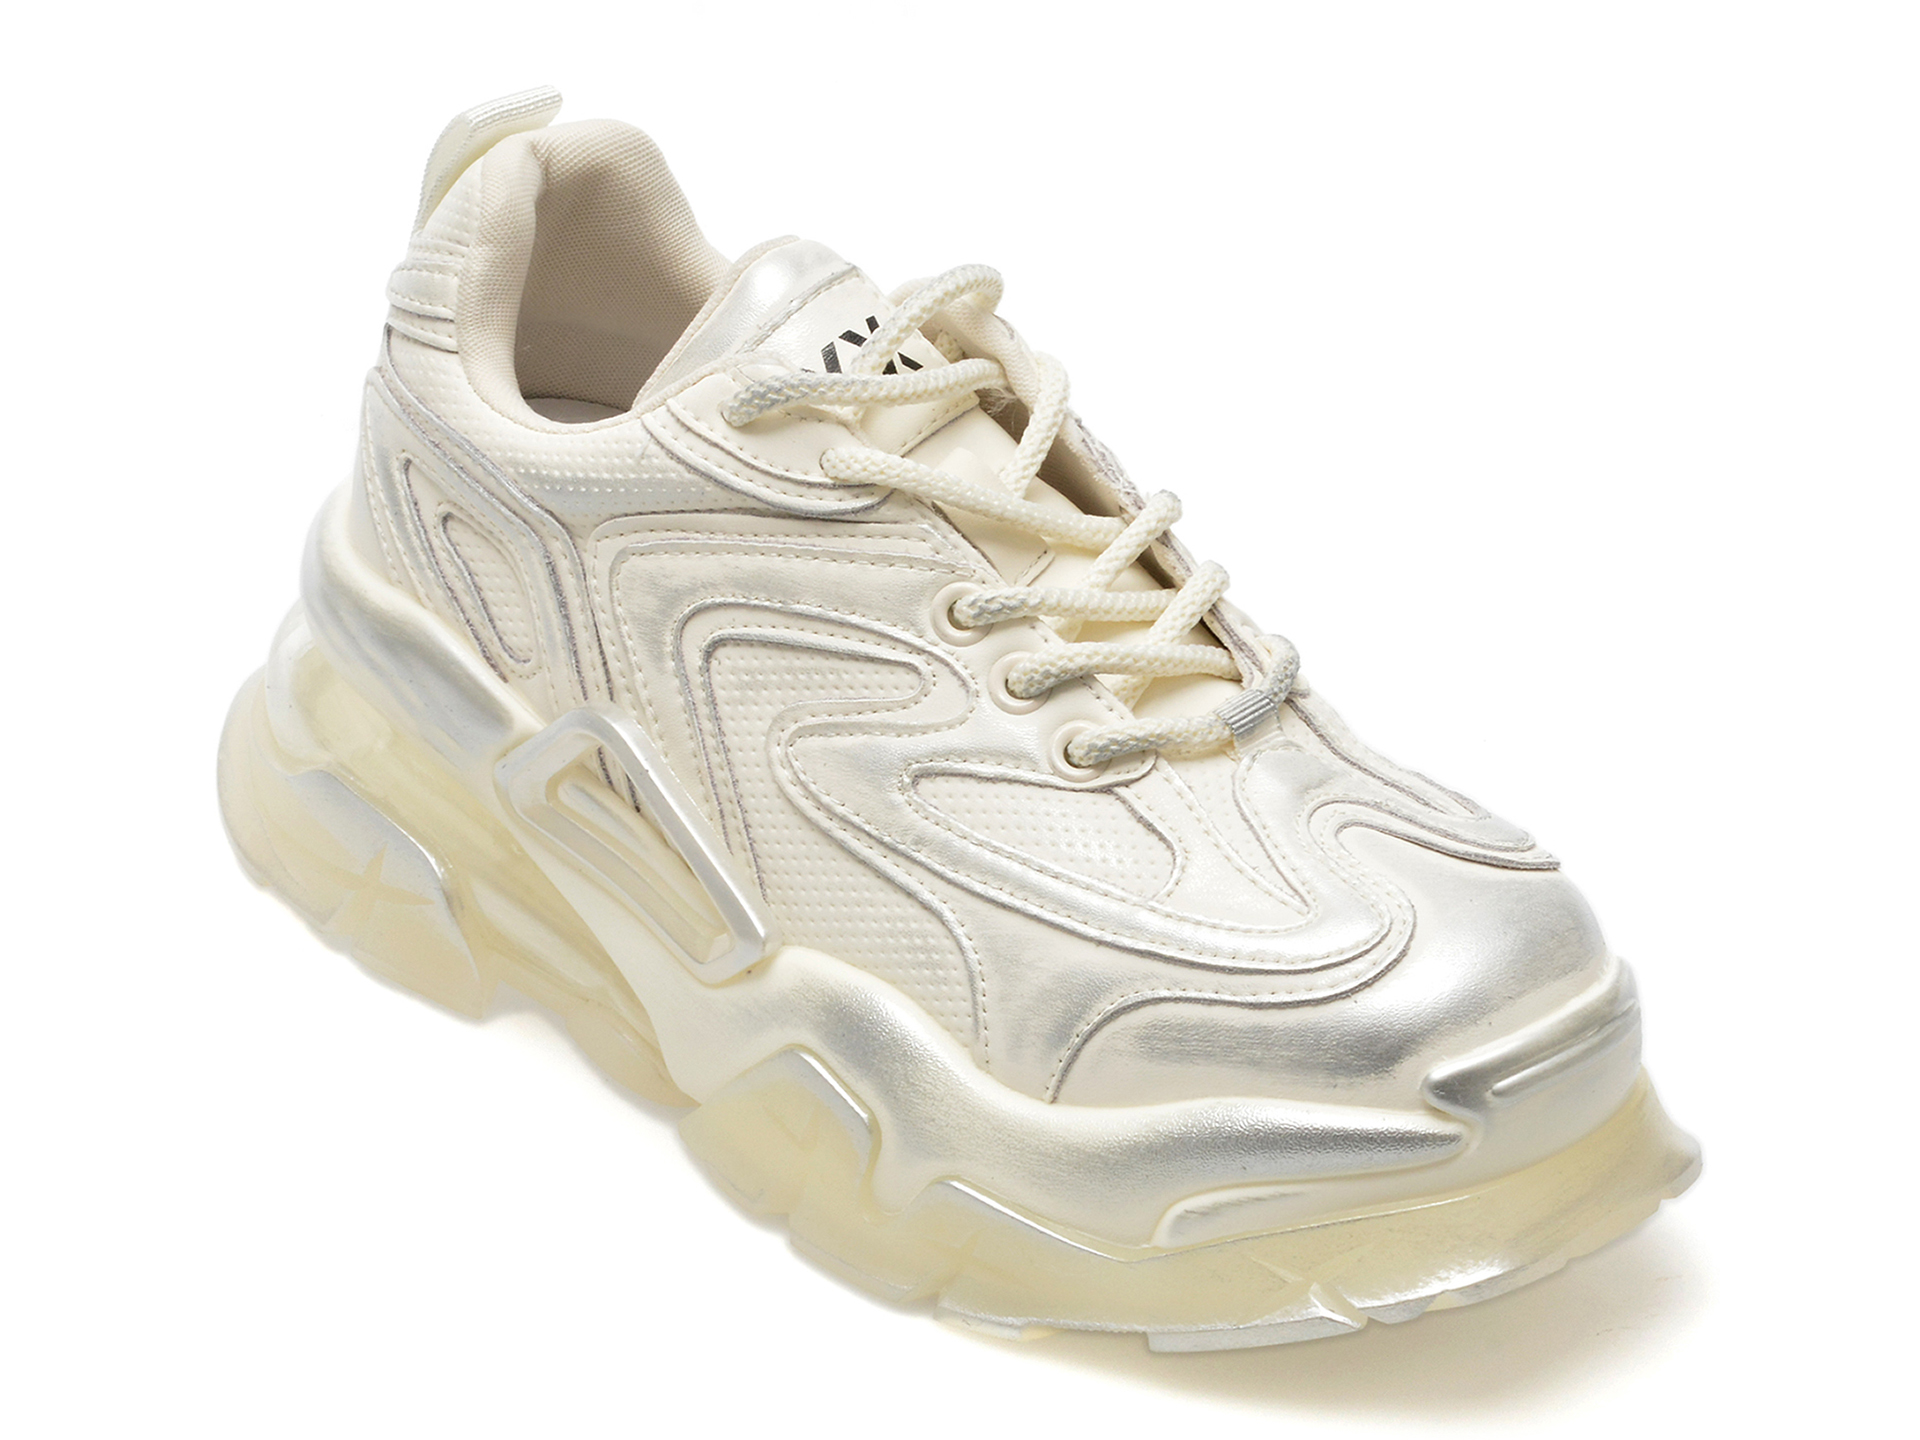 Pantofi GRYXX albi, 3221, din piele naturala